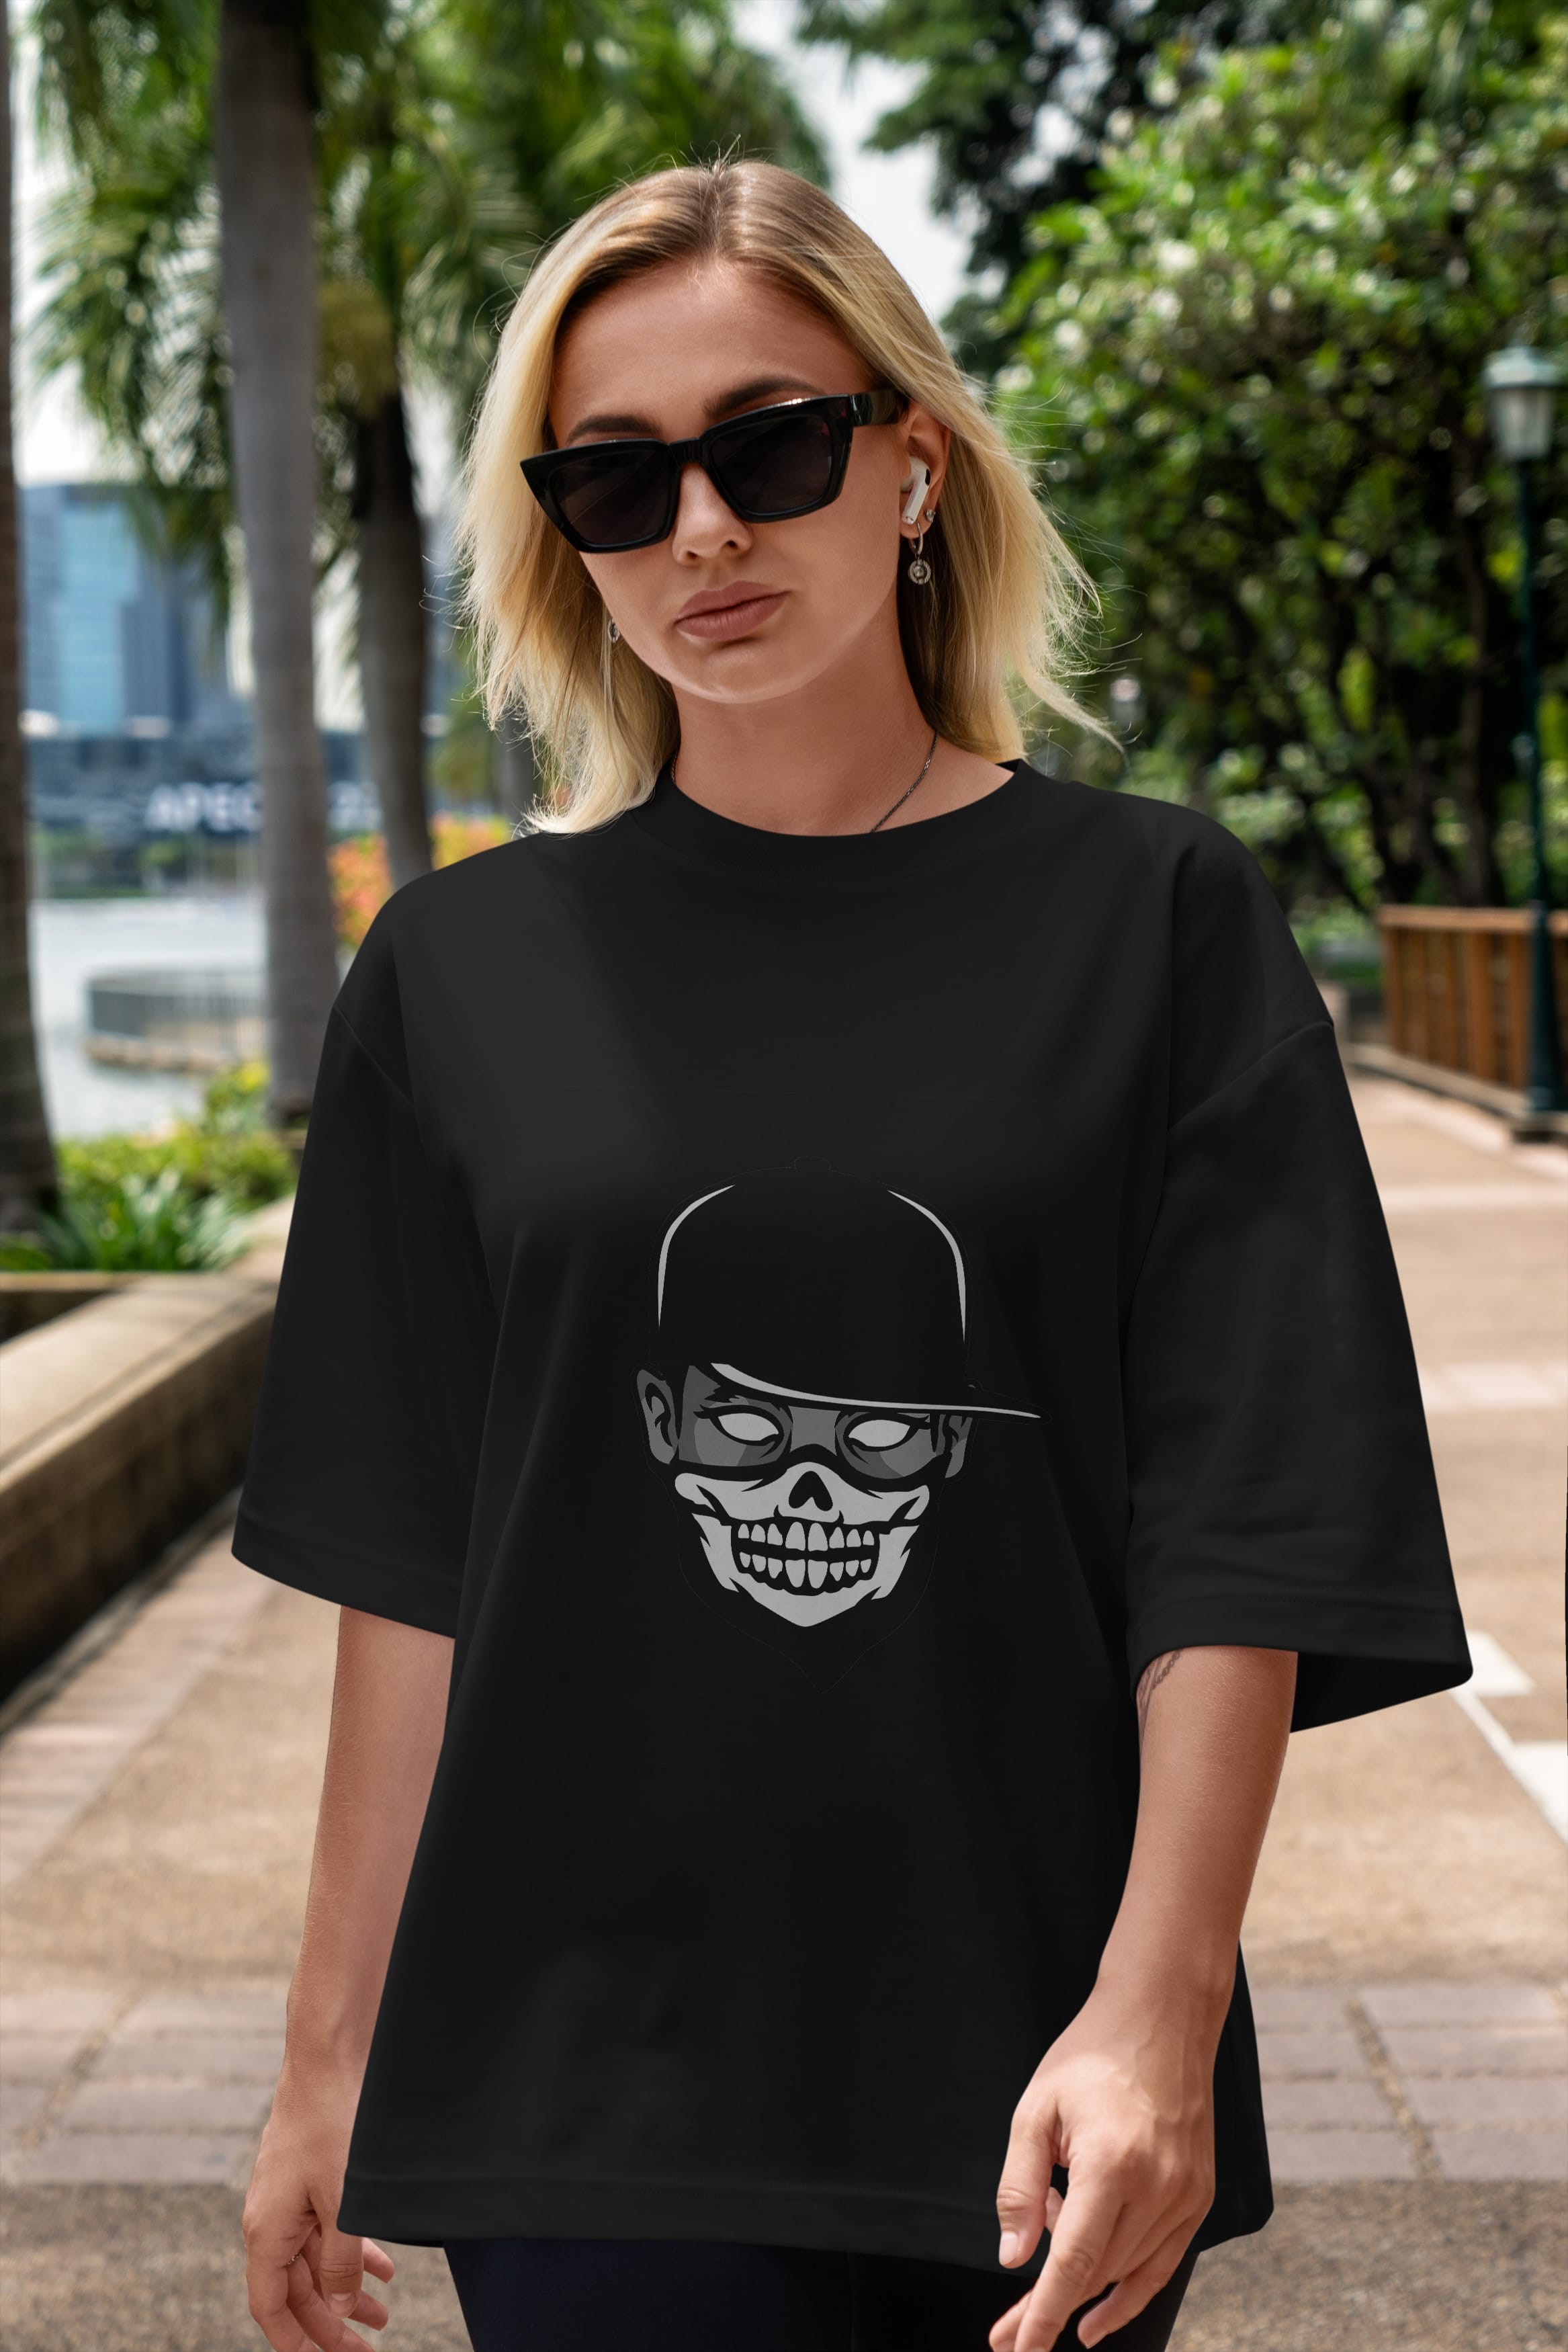 Skull Mask Ön Baskılı Oversize t-shirt Erkek Kadın Unisex %100 Pamuk tişort